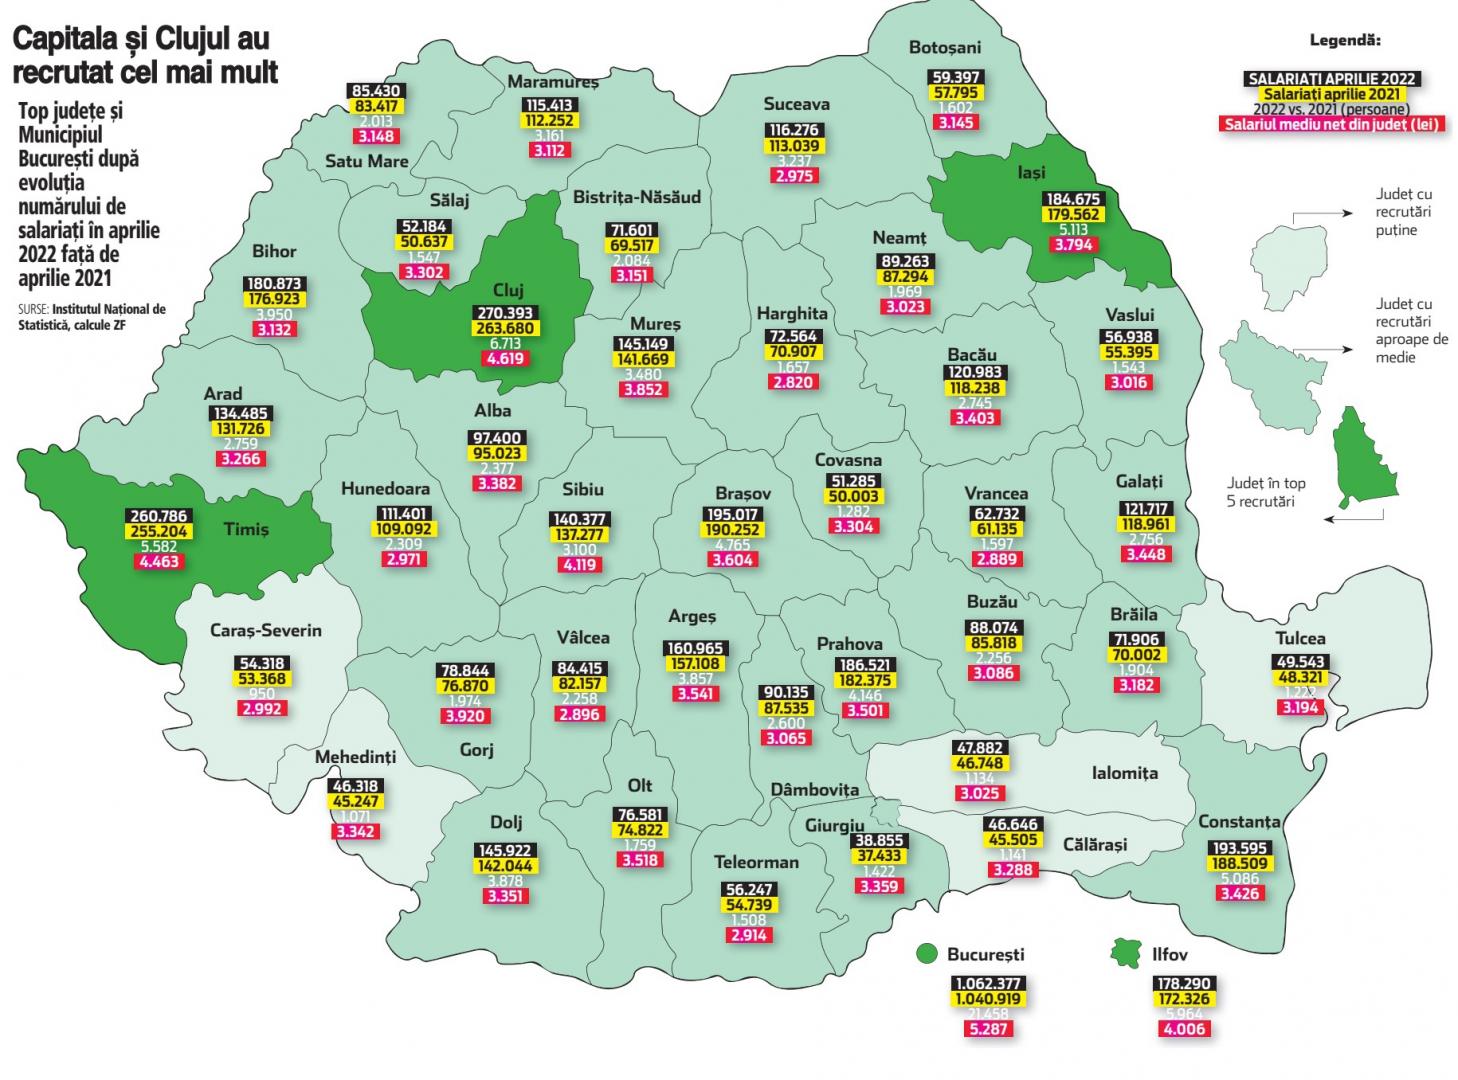 Clujul atrage printre cei mai mulți angajați din țară. Cât e salariul